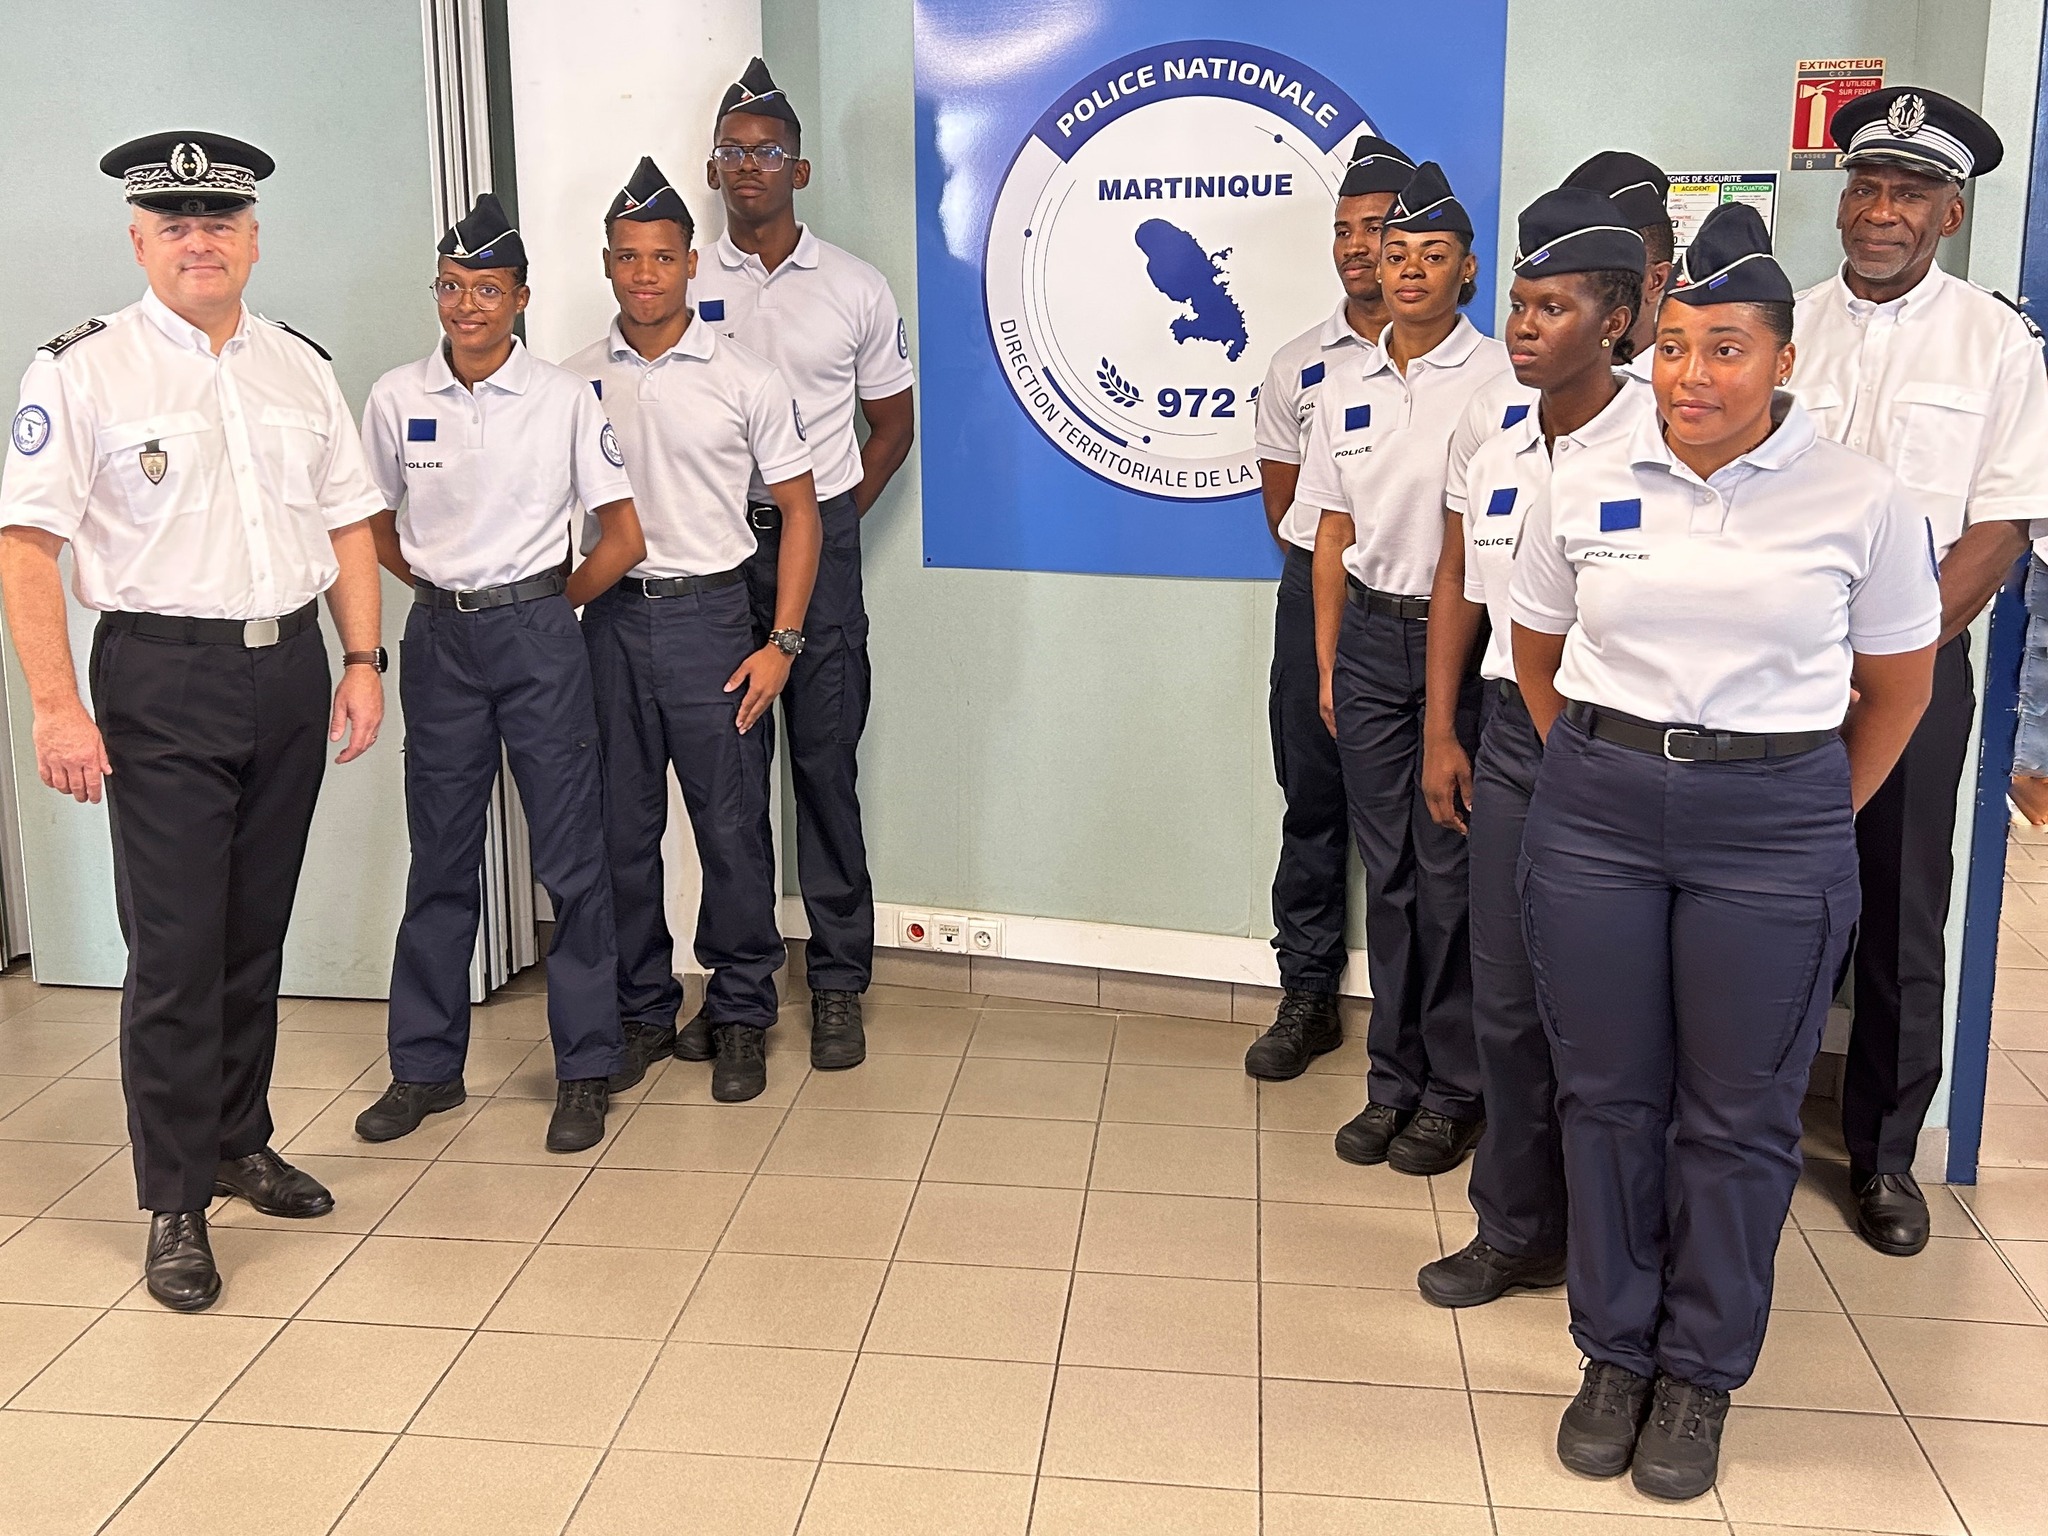     Huit nouveaux policiers adjoints admis au service en Martinique

